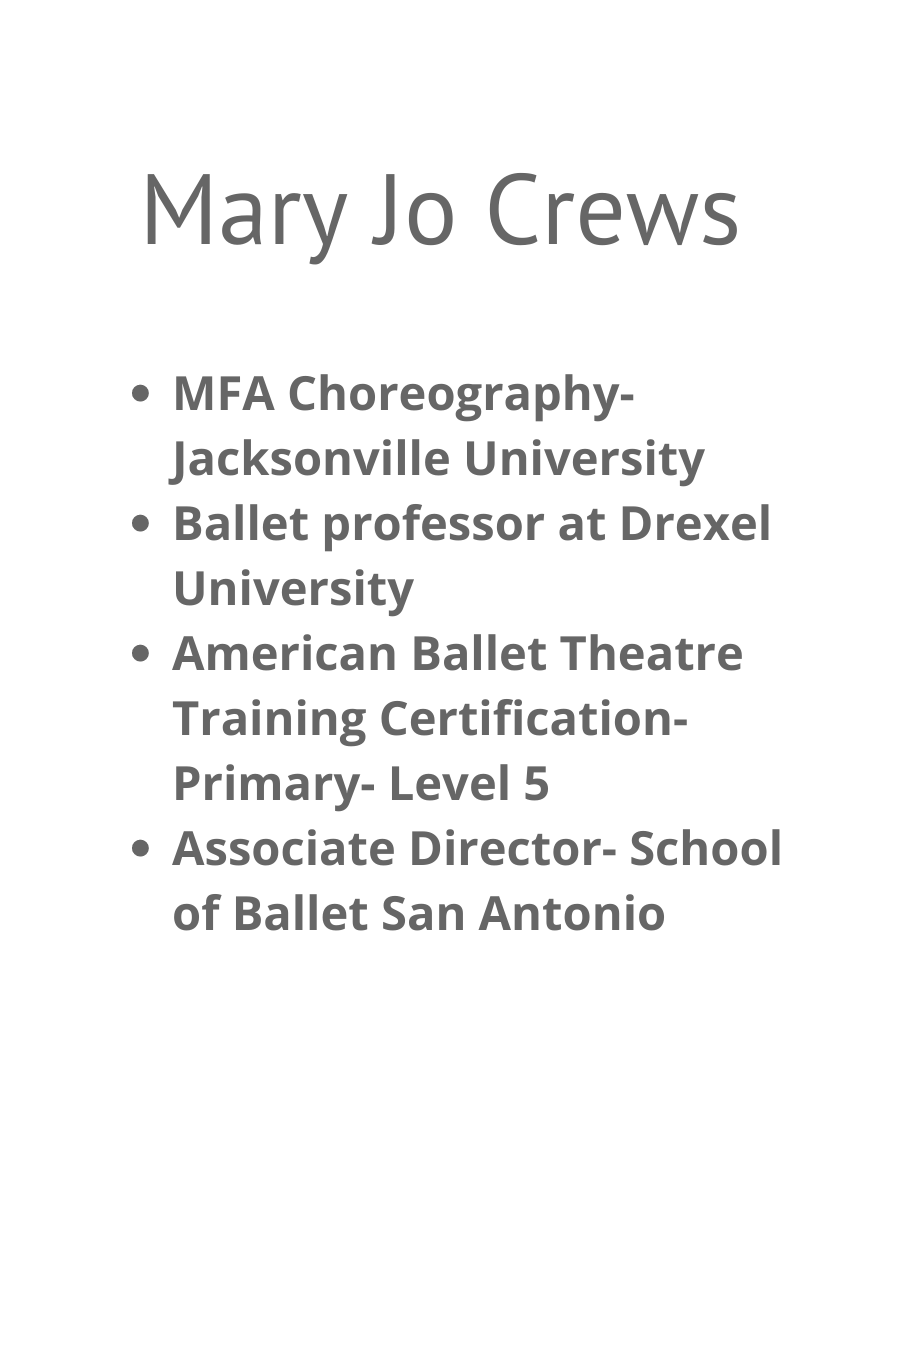 Mary Jo Crews